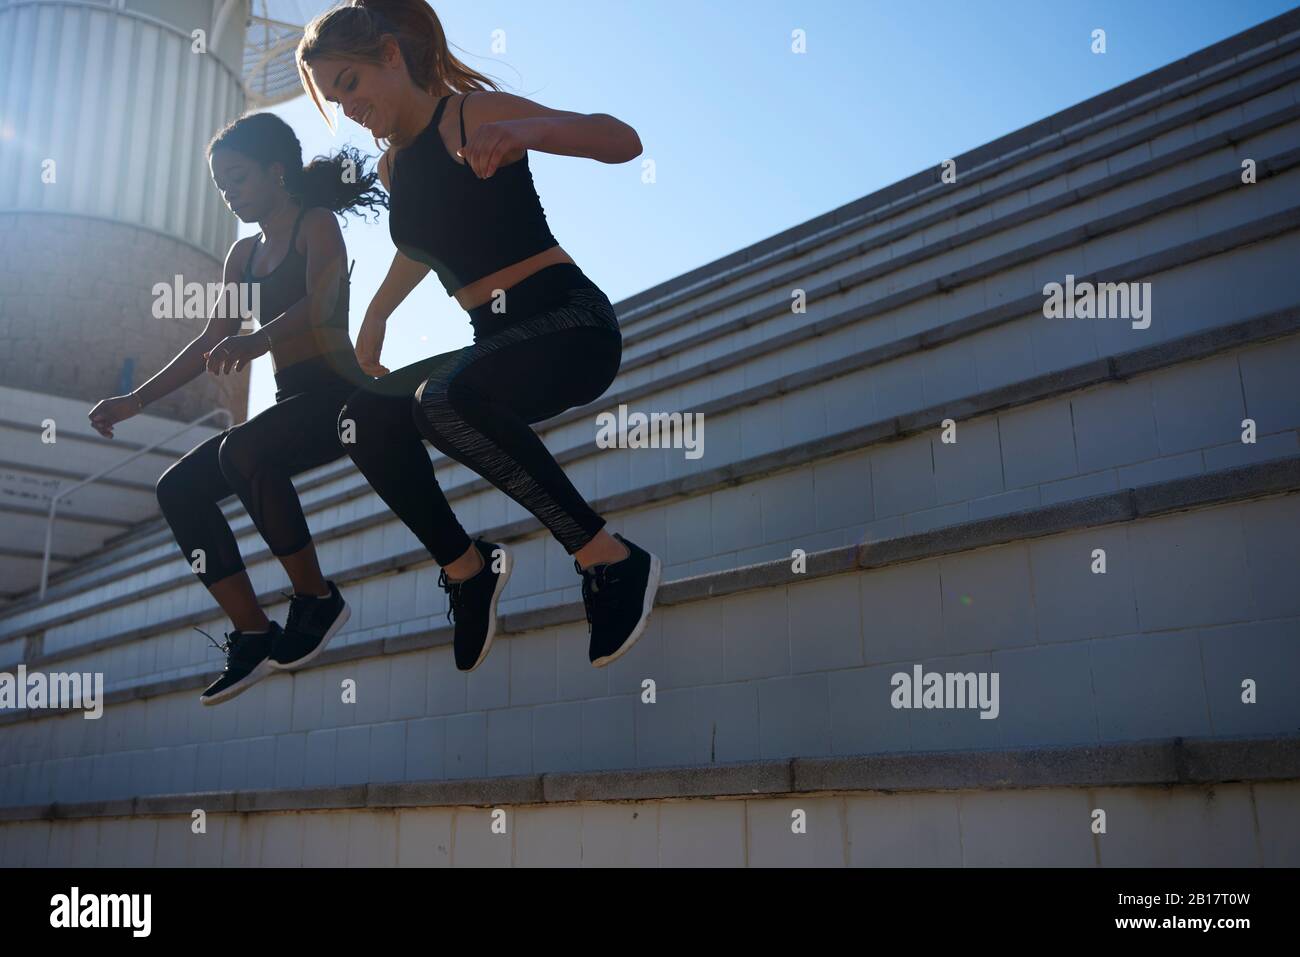 Sportlerinnen springen von einer Treppe Stockfoto